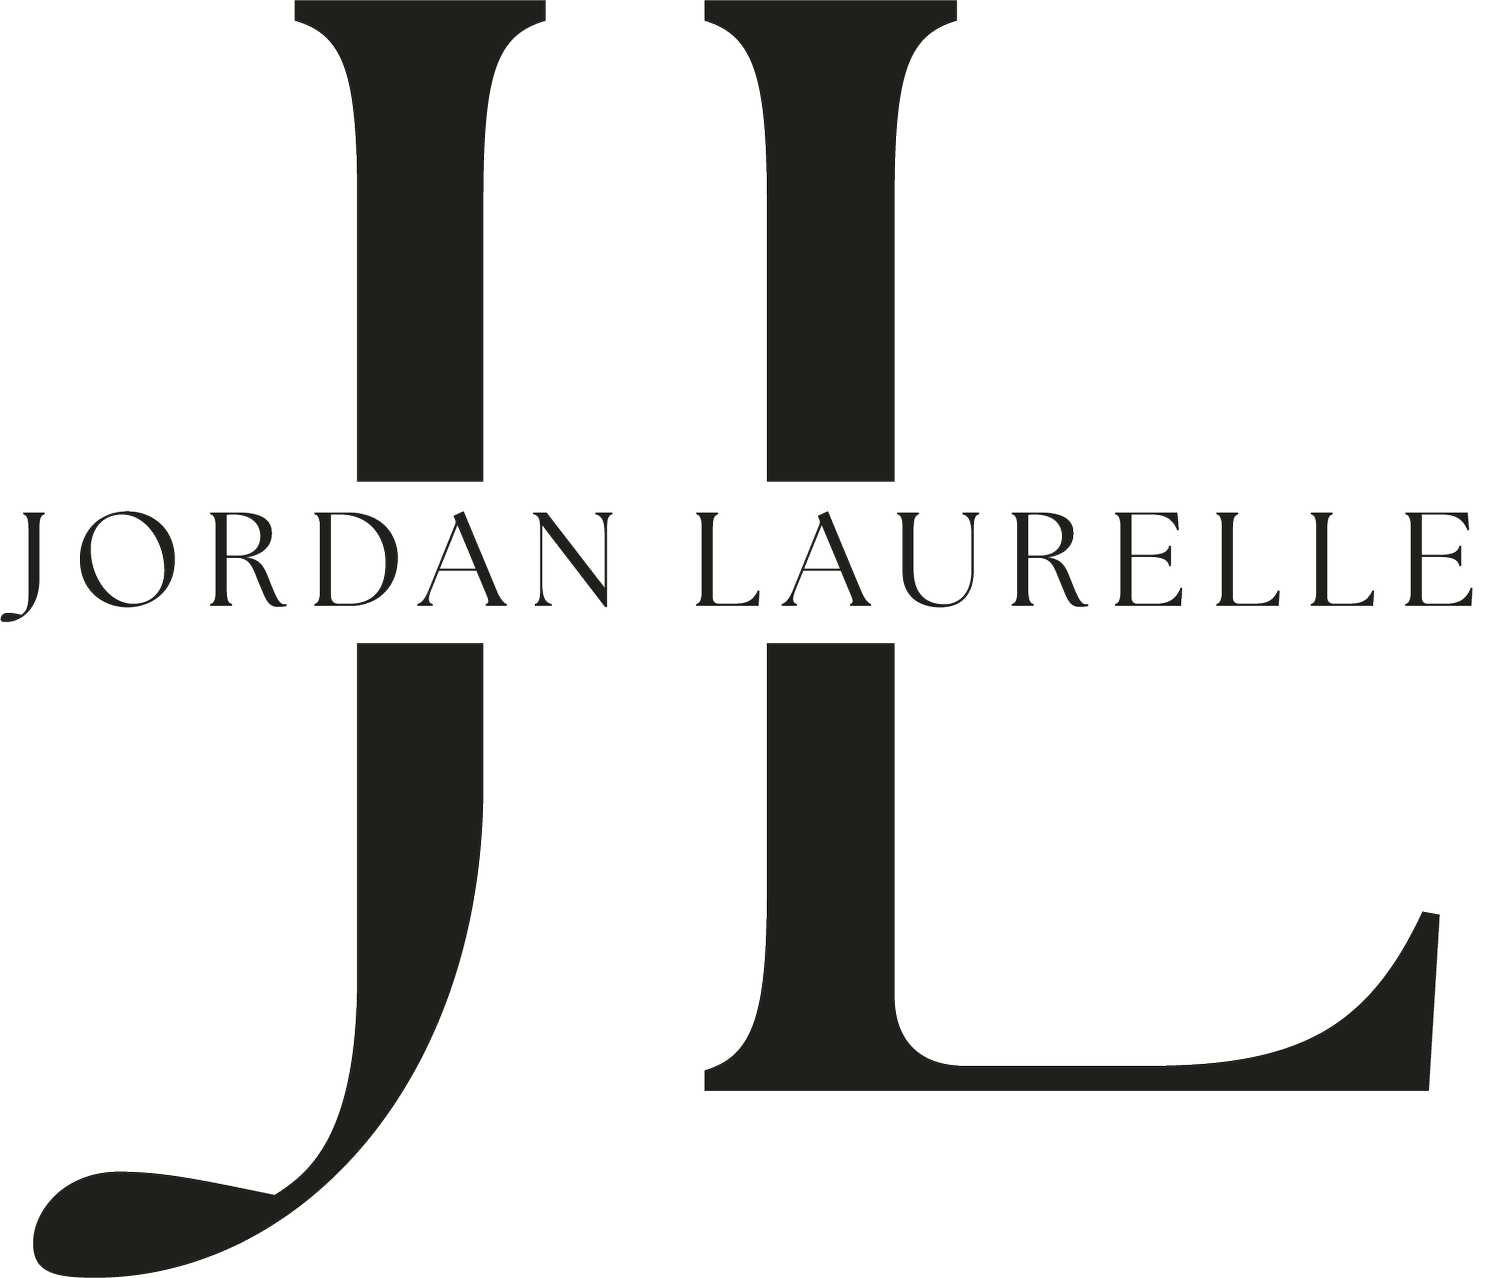 Jordan Laurelle